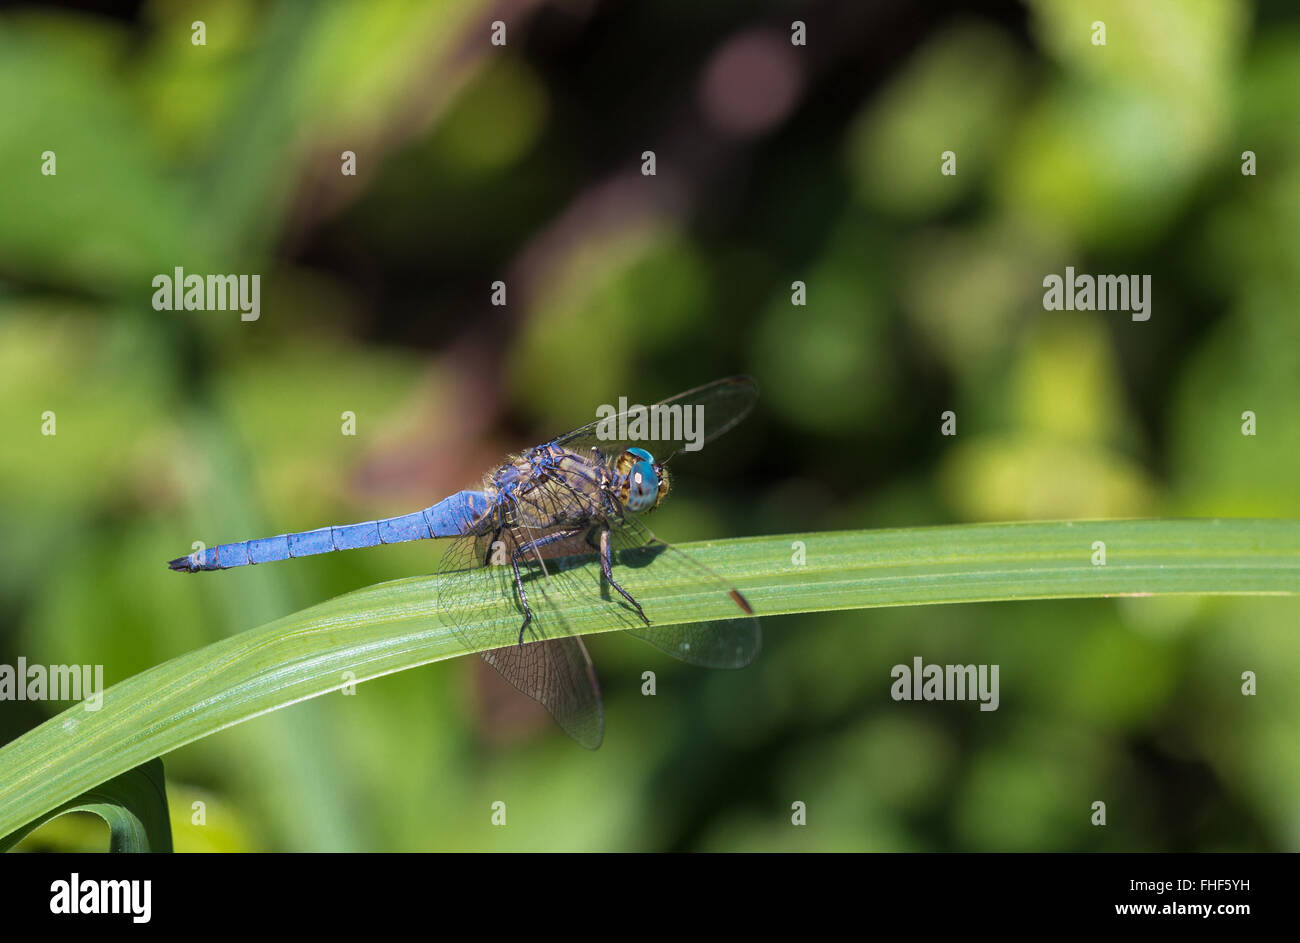 Dasher bleu/bleu une libellule, Dasher Pachydiplax longipennis, est assis sur une feuille, le séchage des ailes. Banque D'Images